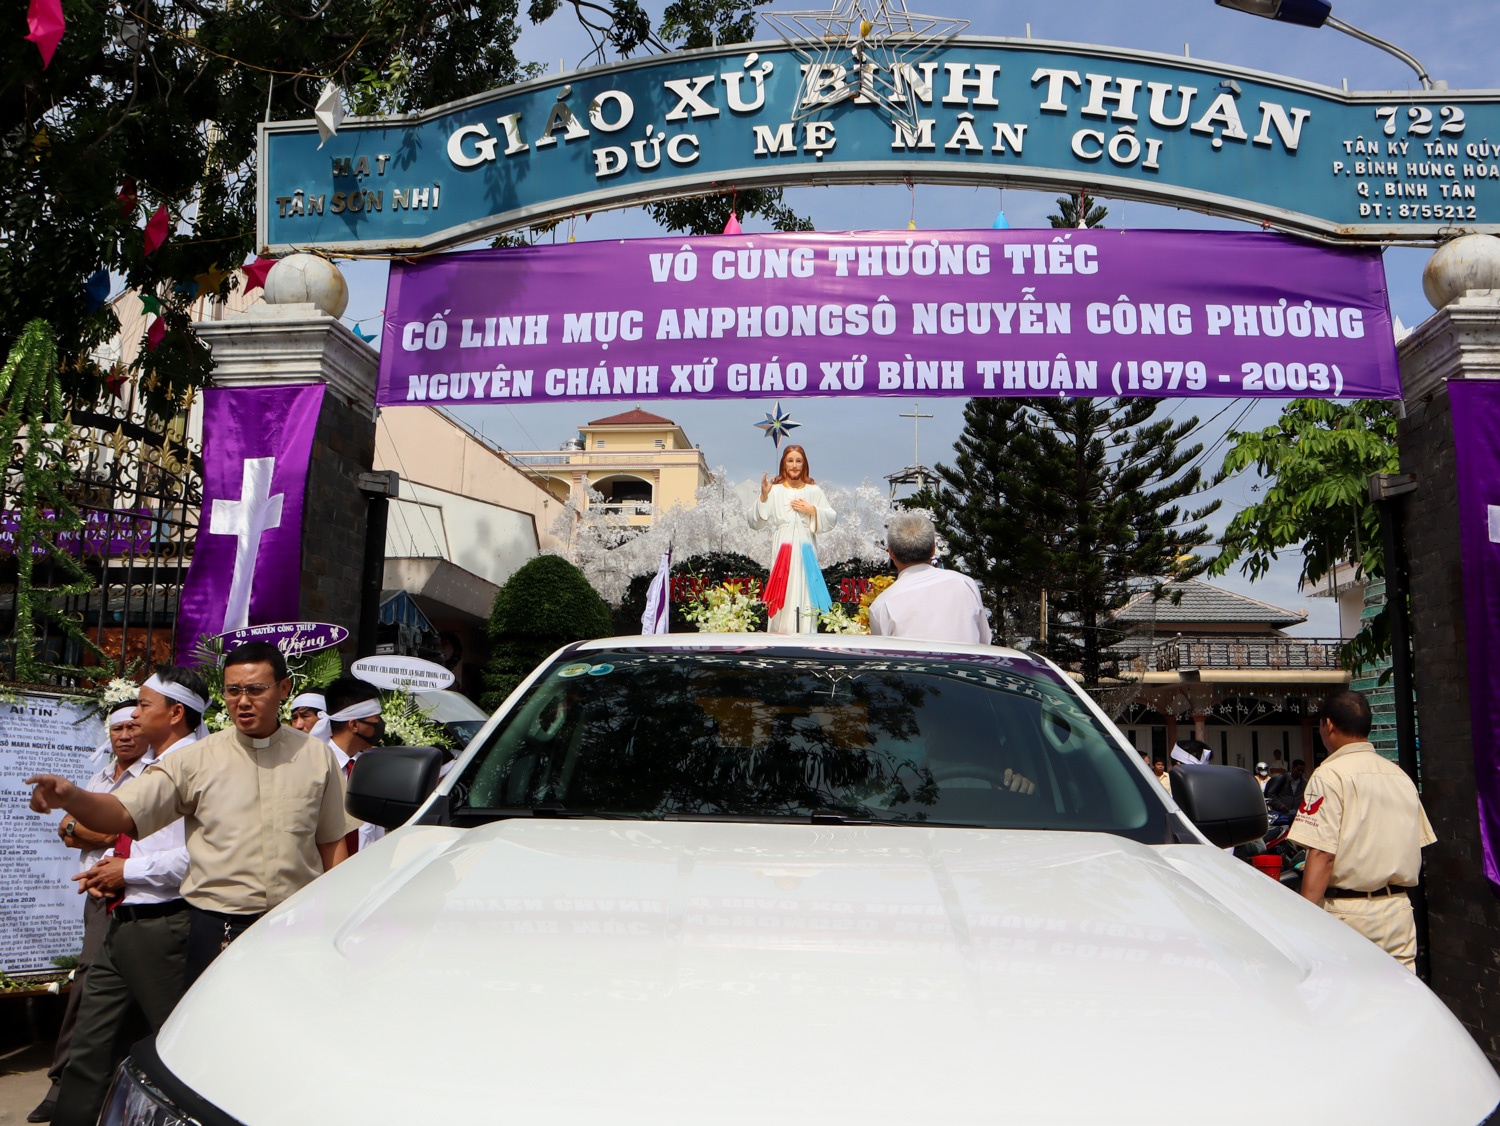 Thánh lễ An táng Cha cố Anphongsô - nguyên Chánh xứ Bình Thuận ngày 23-12-2020